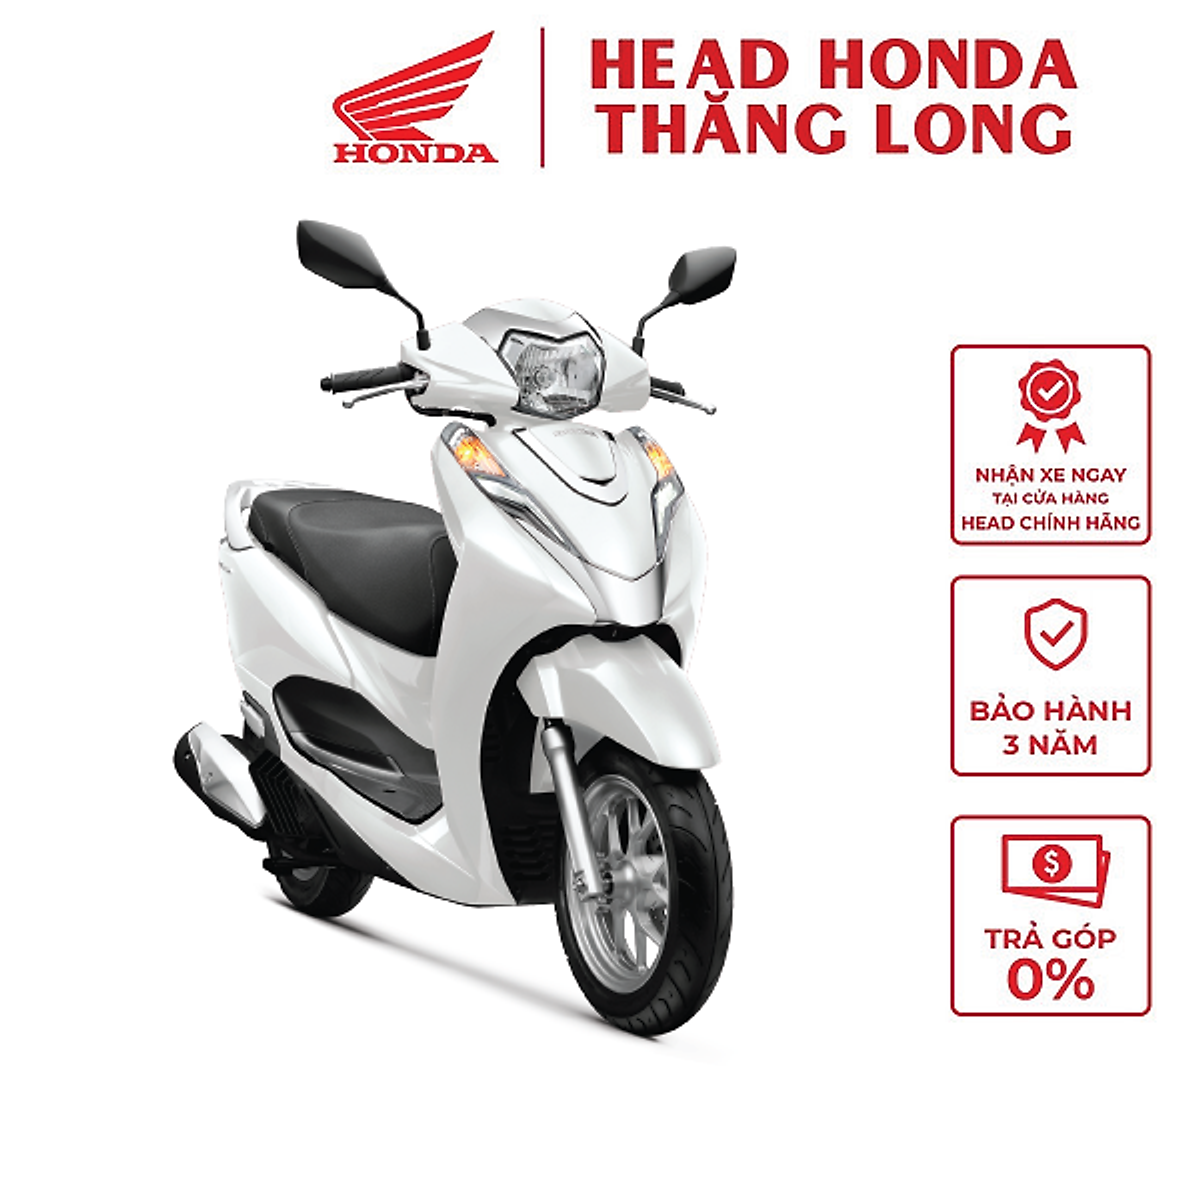 Honda tăng giá nhiều mẫu xe máy